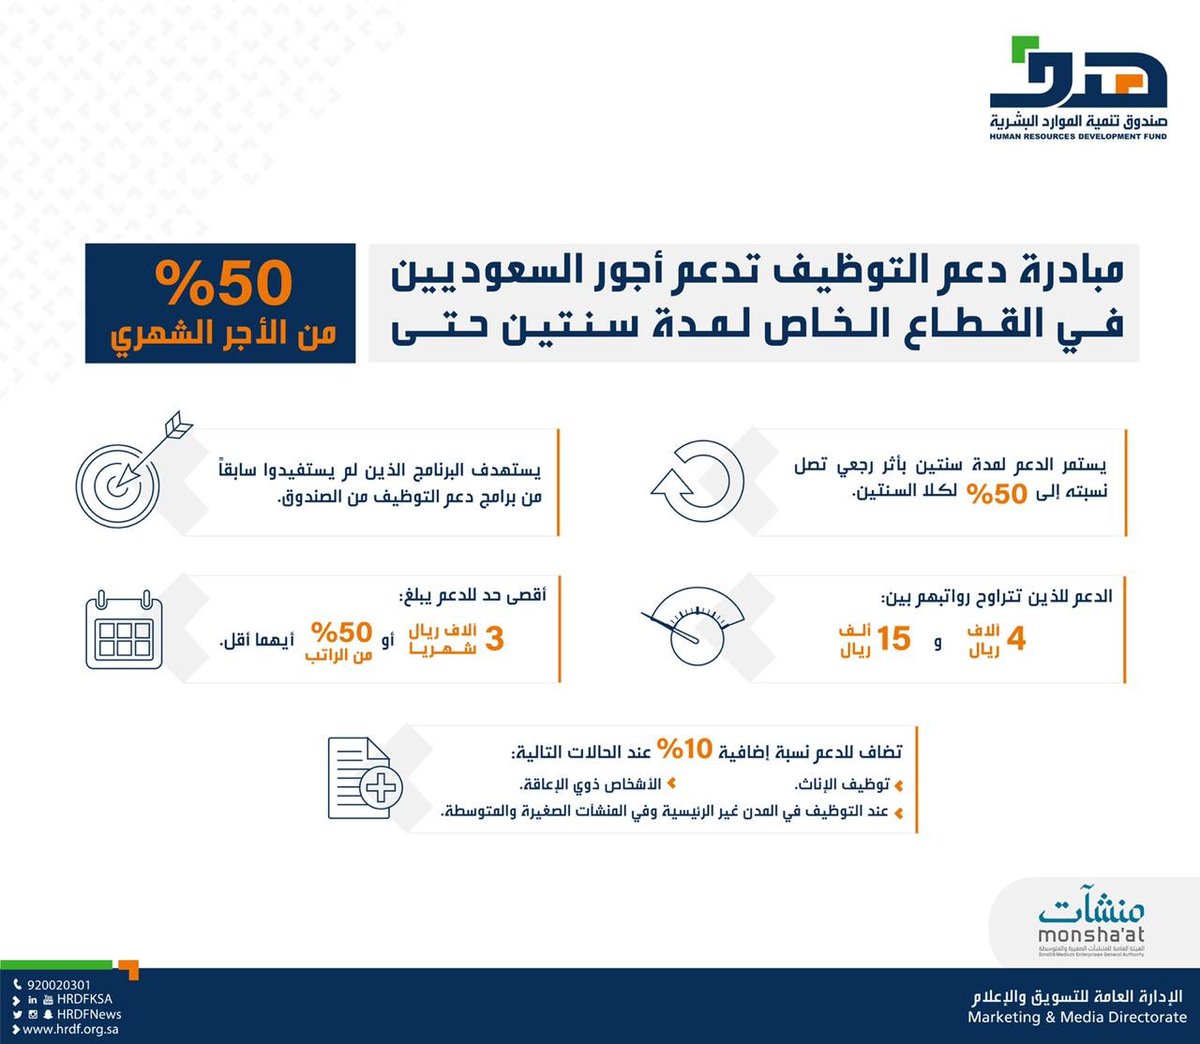 هدف Pa Twitter هدف مبادرة دعم التوظيف تدعم أجور السعوديين في القطاع الخاص لمدة سنتين حتى 50 من الأجر الشهري Https T Co 1poeosg6ky Https T Co 3zdjwonfyu